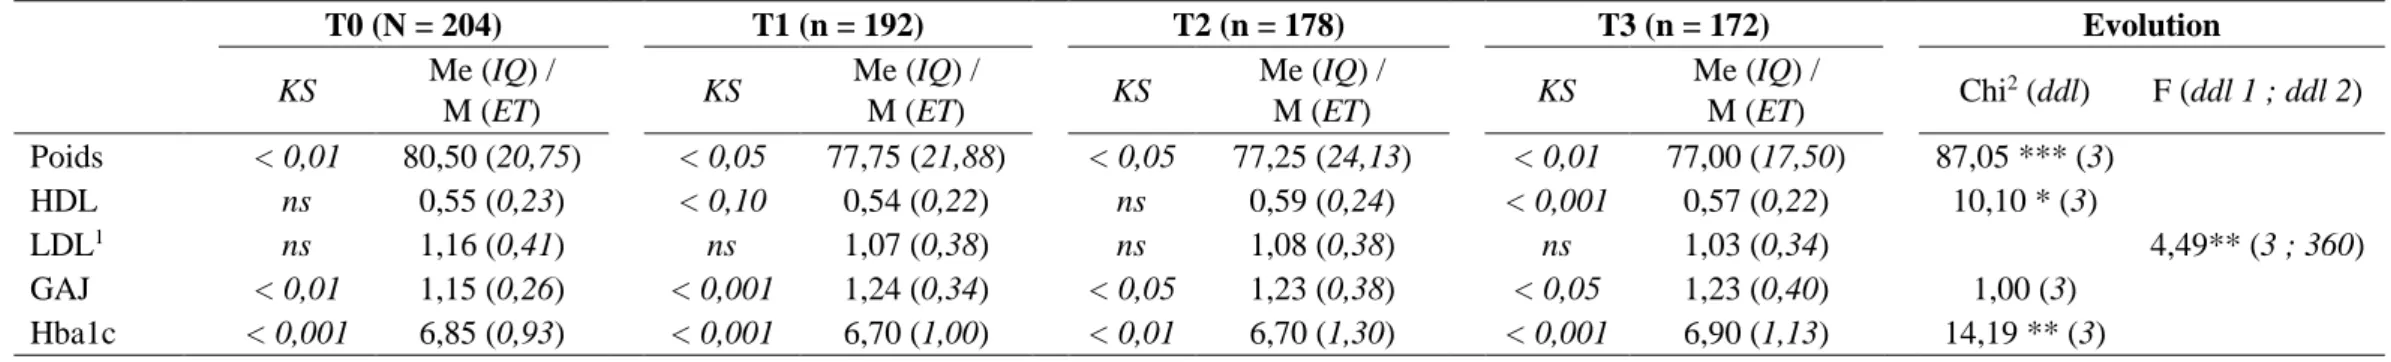 Tableau 2. Évolution du poids, de l'HDL, du LDL, de la glycémie à jeun (GAJ) et de l'Hba1c sur l'ensemble des temps de l'étude  T0 (N = 204)  T1 (n = 192)  T2 (n = 178)  T3 (n = 172)  Evolution  KS  Me (IQ) /  M (ET) KS  Me (IQ) / M (ET) KS  Me (IQ) / M (E